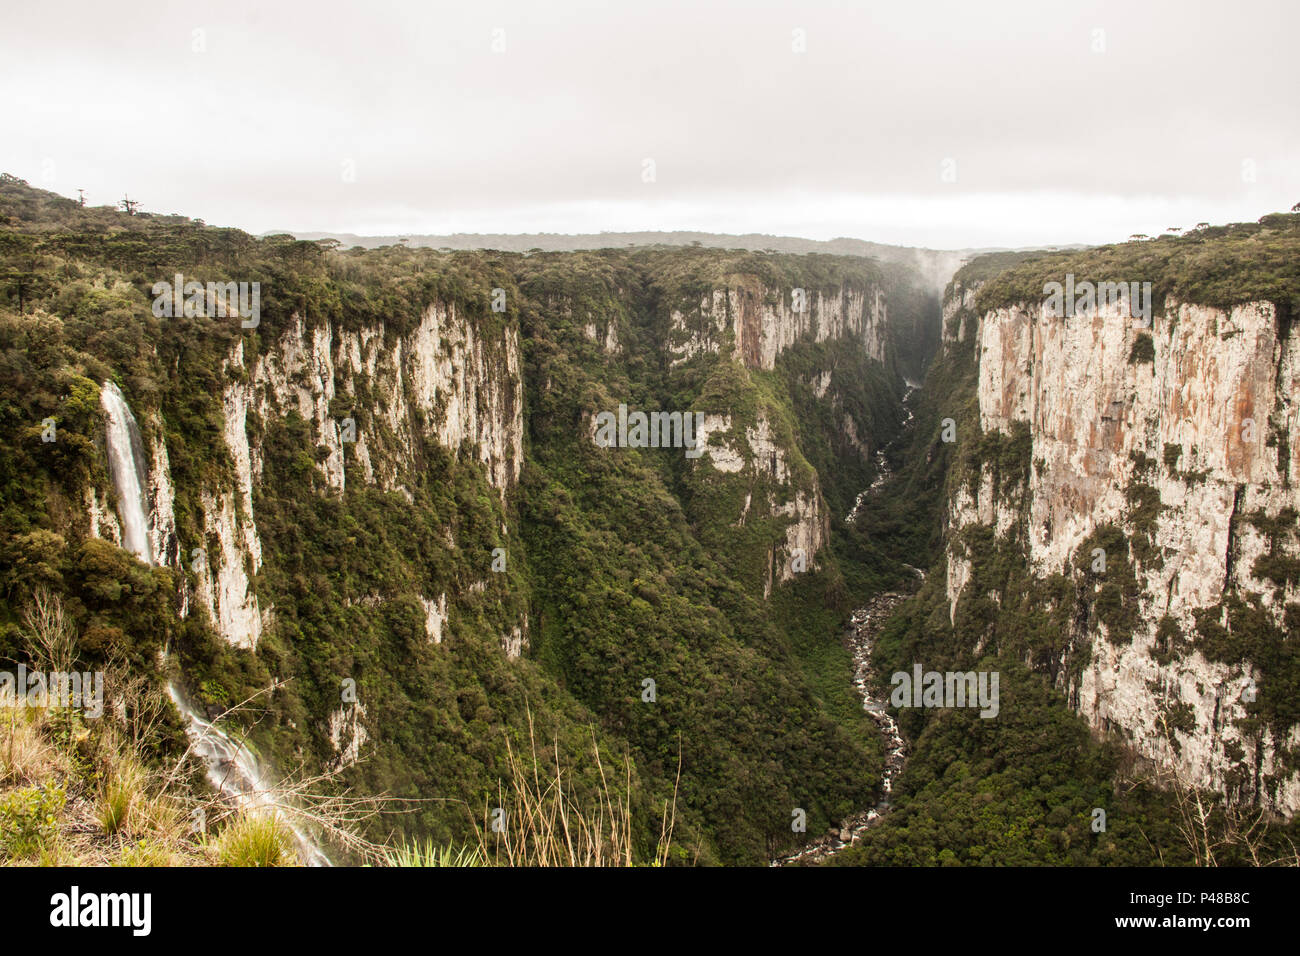 Cambara do Sul, RS - 01/10/2014 - Cânion Itambezinho. Vista do início da fenda de mil metros de altura, em baixo o Rio dos bois, do lado esquerdo uma cachoeira. (Foto: Vanessa Bohn / Fotoarena) Stock Photo